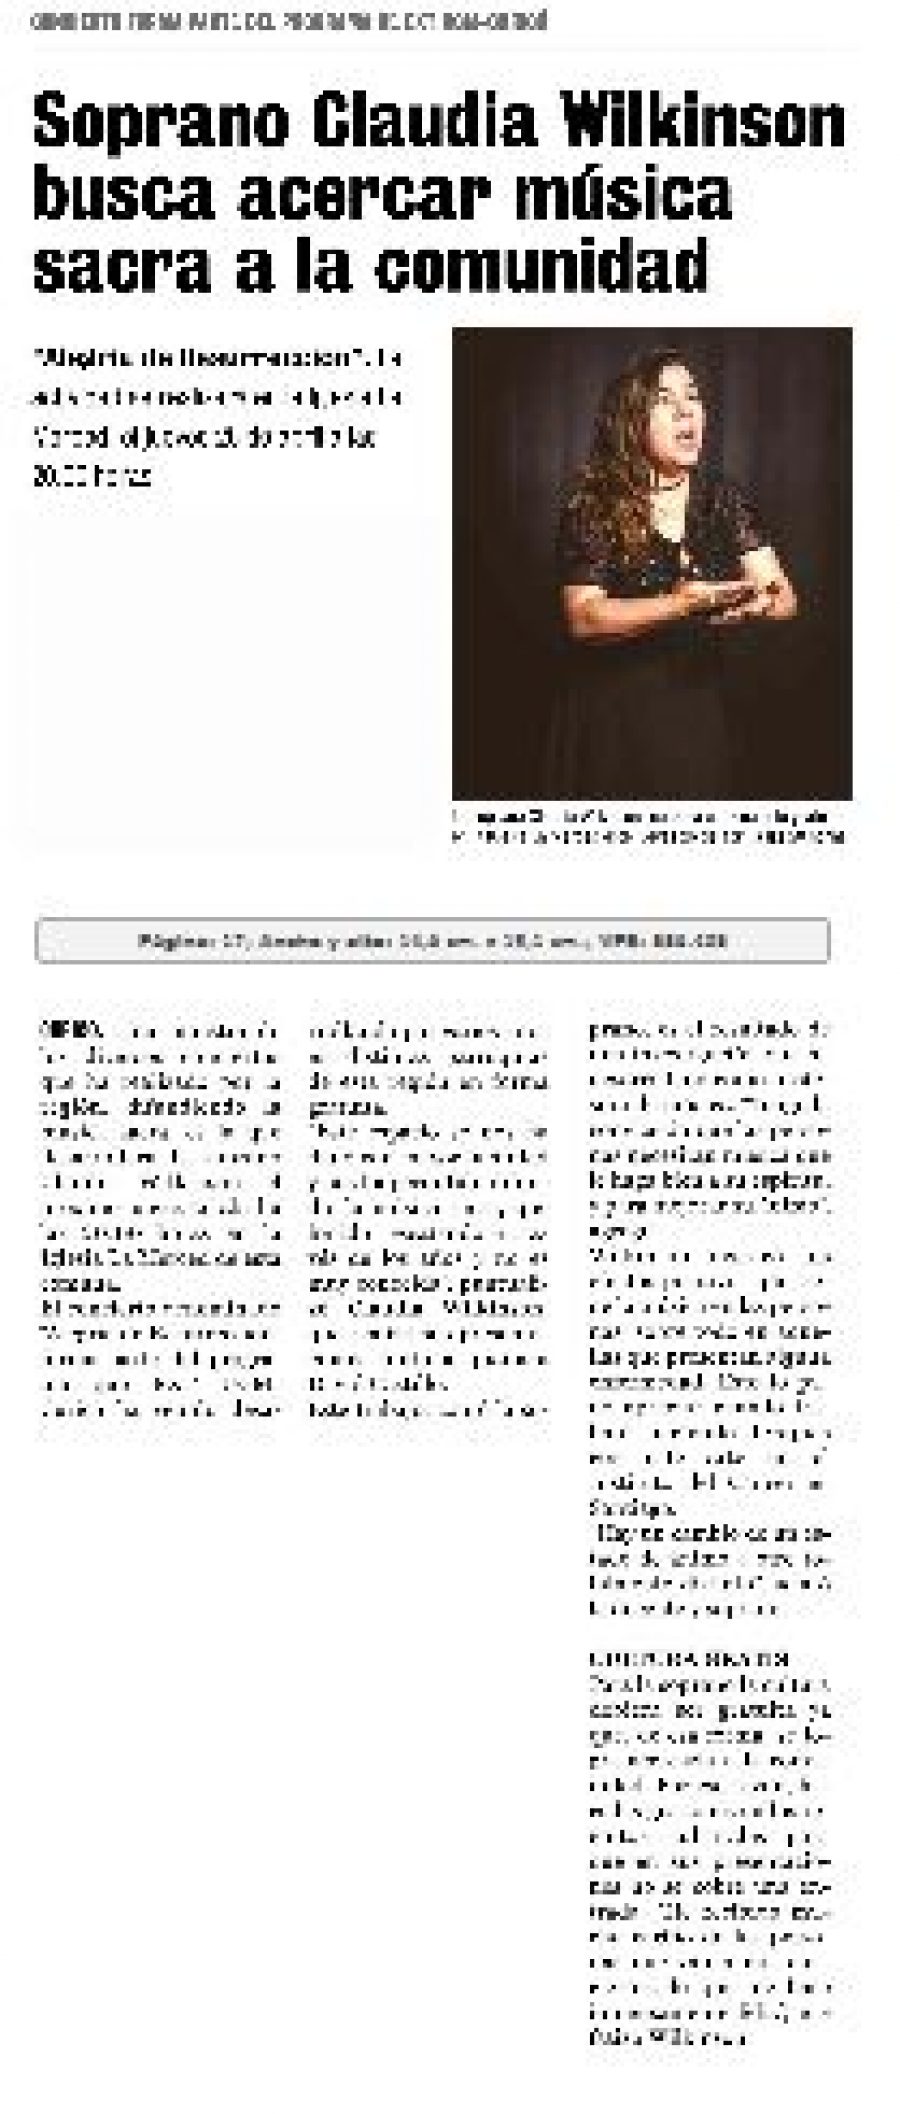 23 de abril en Diario La Prensa: “Soprano Claudia Wilkinson busca acercar música sacra a la comunidad”